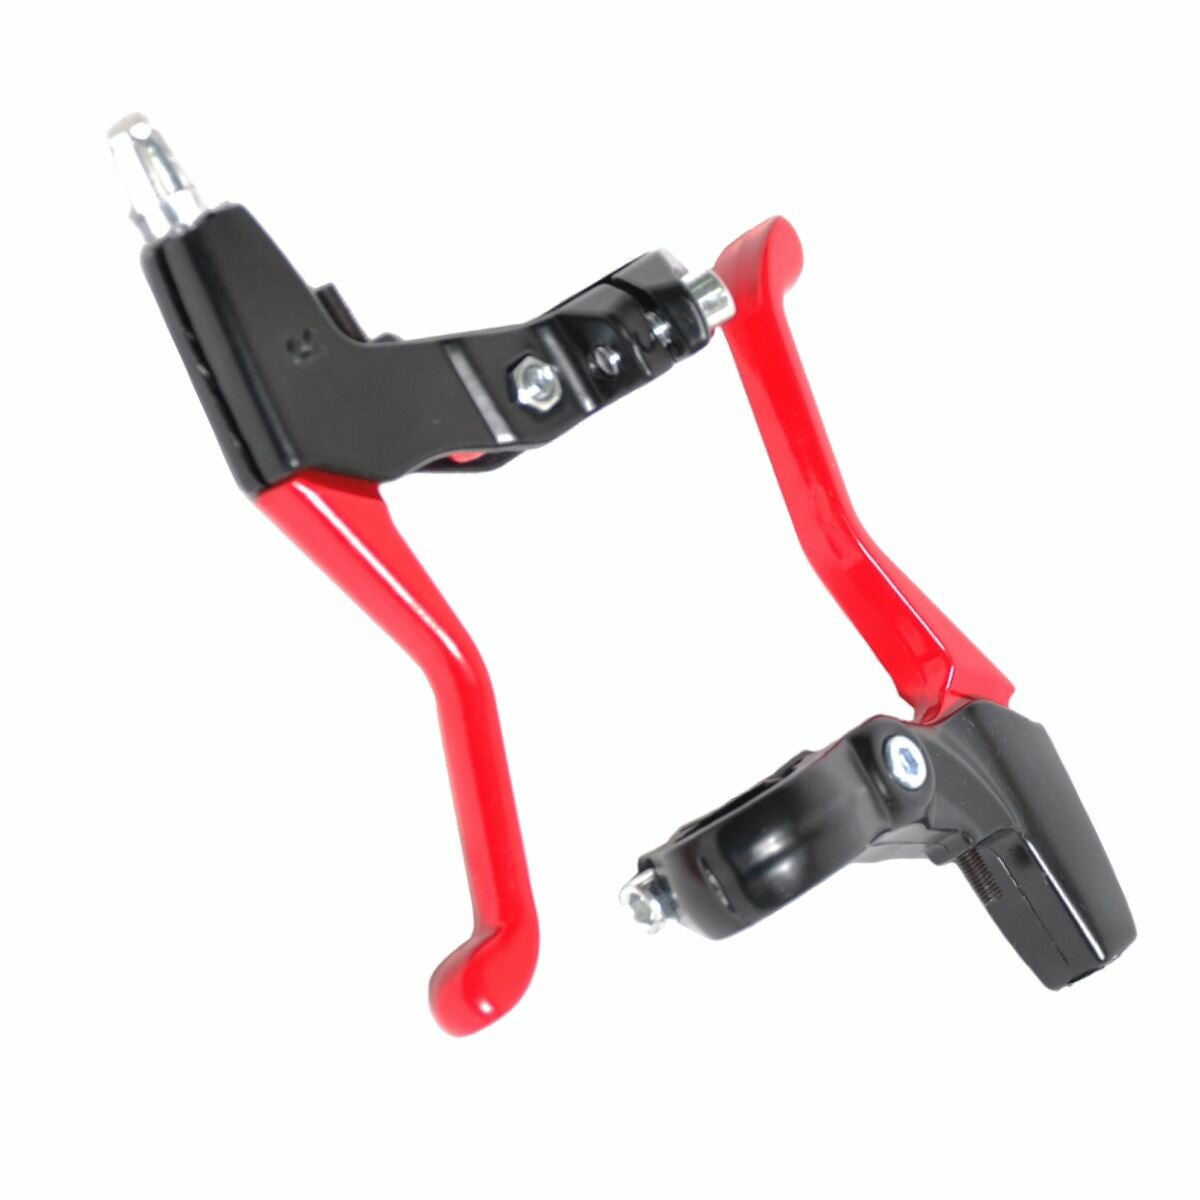 Ручки тормоза на велосипед HORST V-brake/кантилевер, алюминиевые, красно-черные (00-171607)